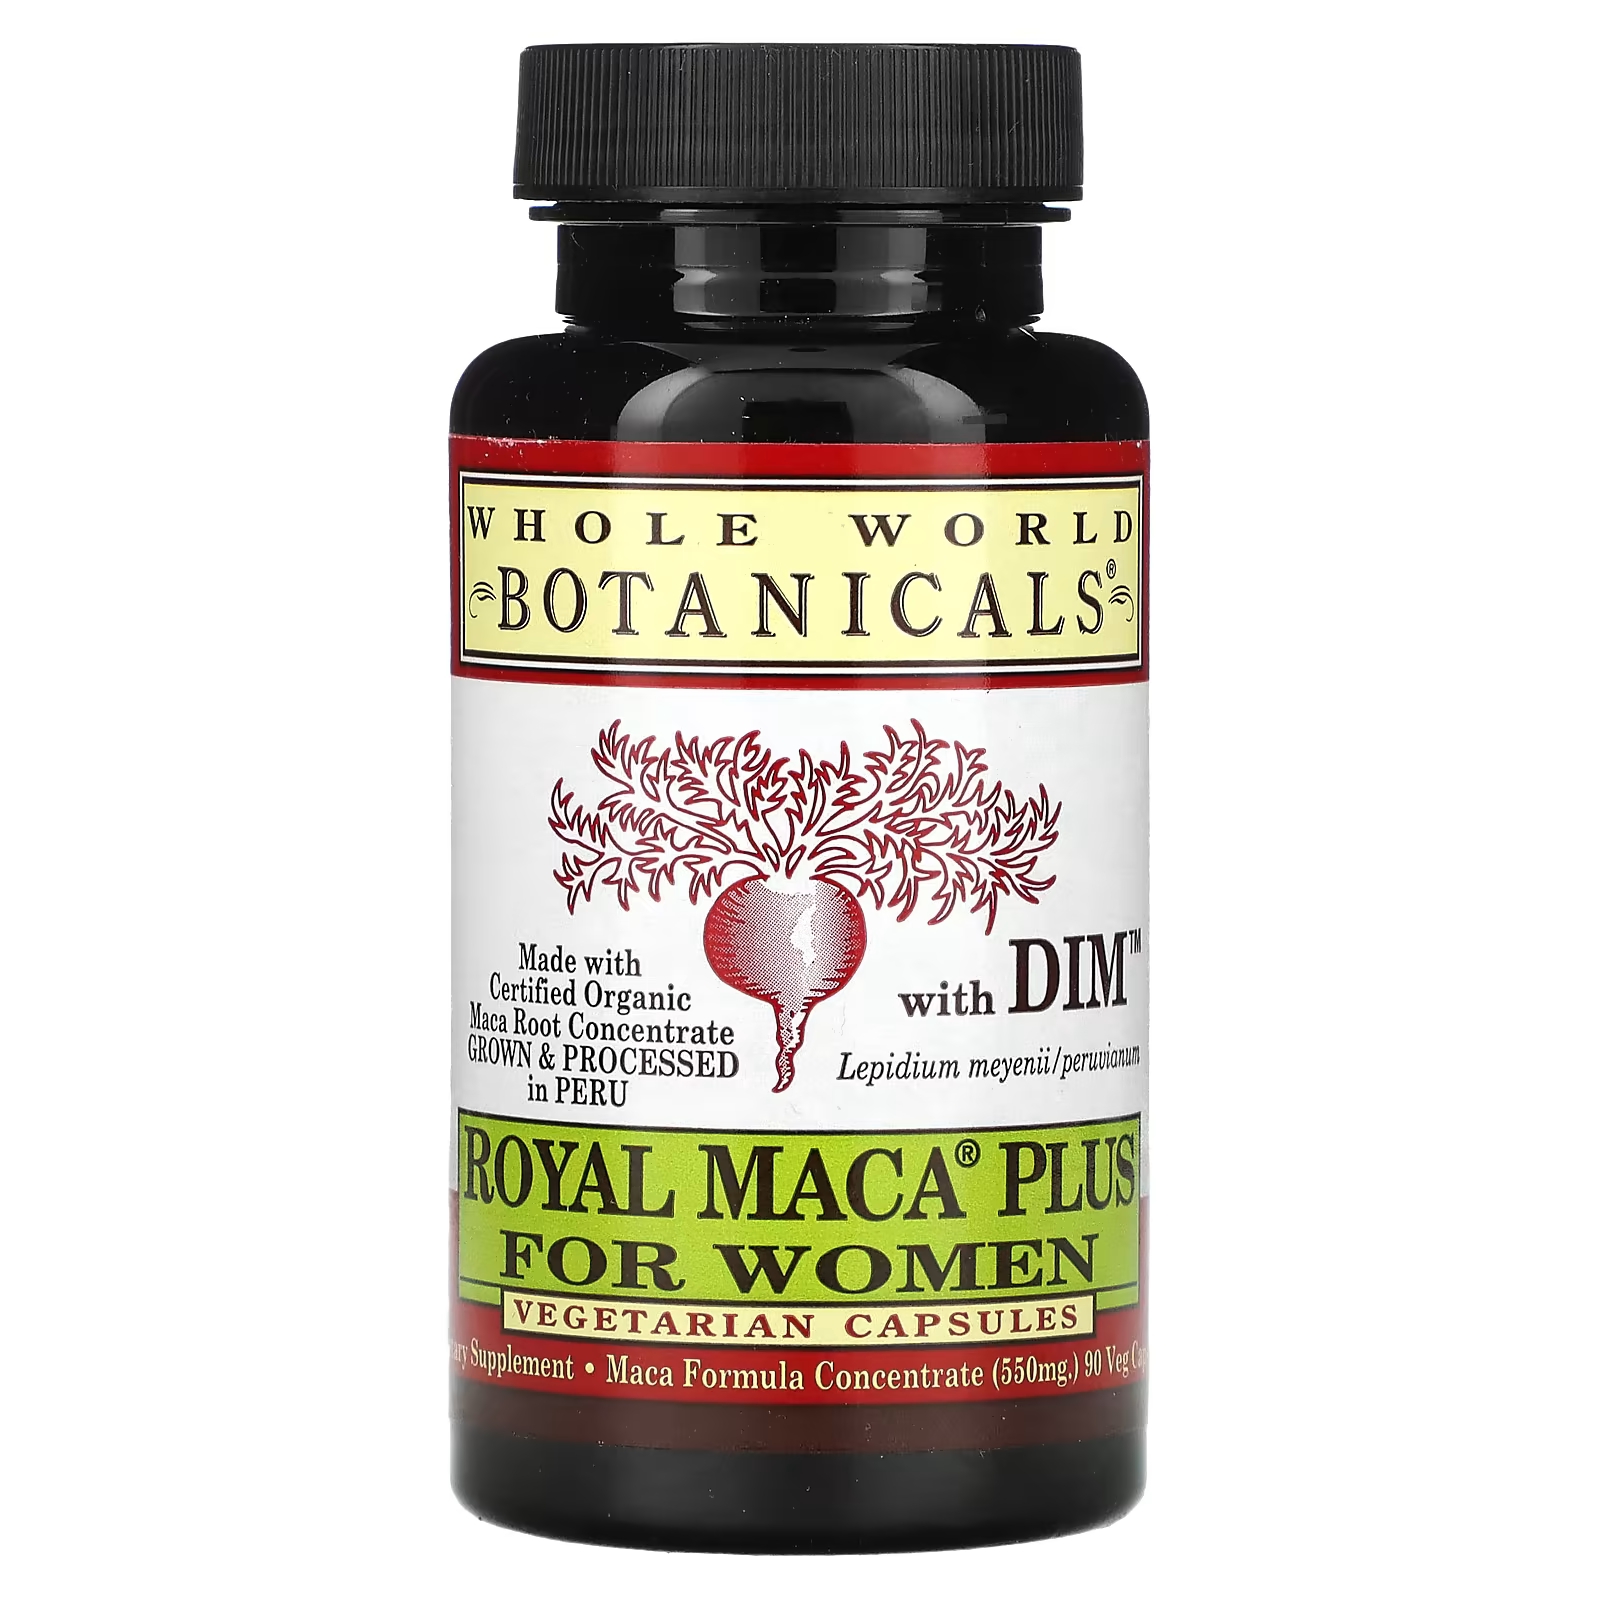 Пищевая добавка Whole World Botanicals Royal Maca Plus с DIM 900 мг, 90 капсул (550 мг на капсулу) 1057 маки